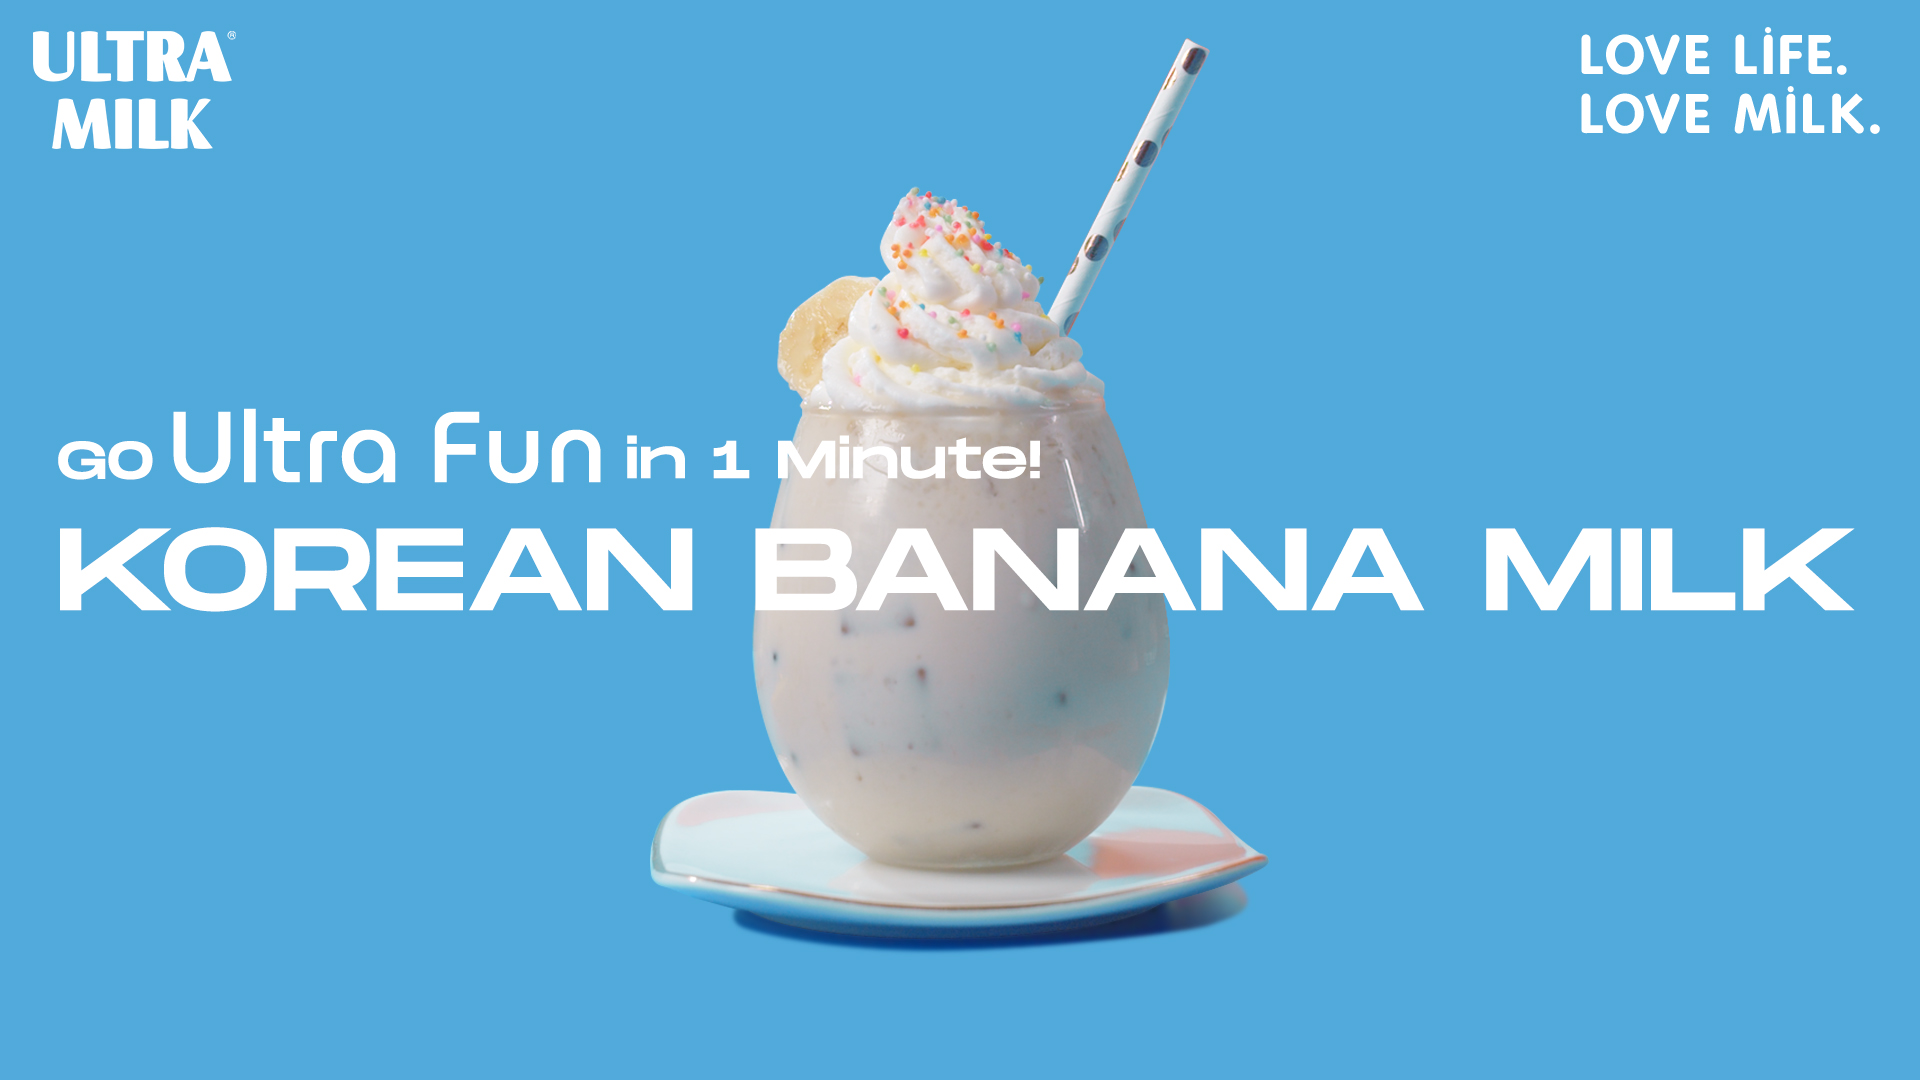 Go Ultra Fun in 1 Minute. Korean Banana Milk